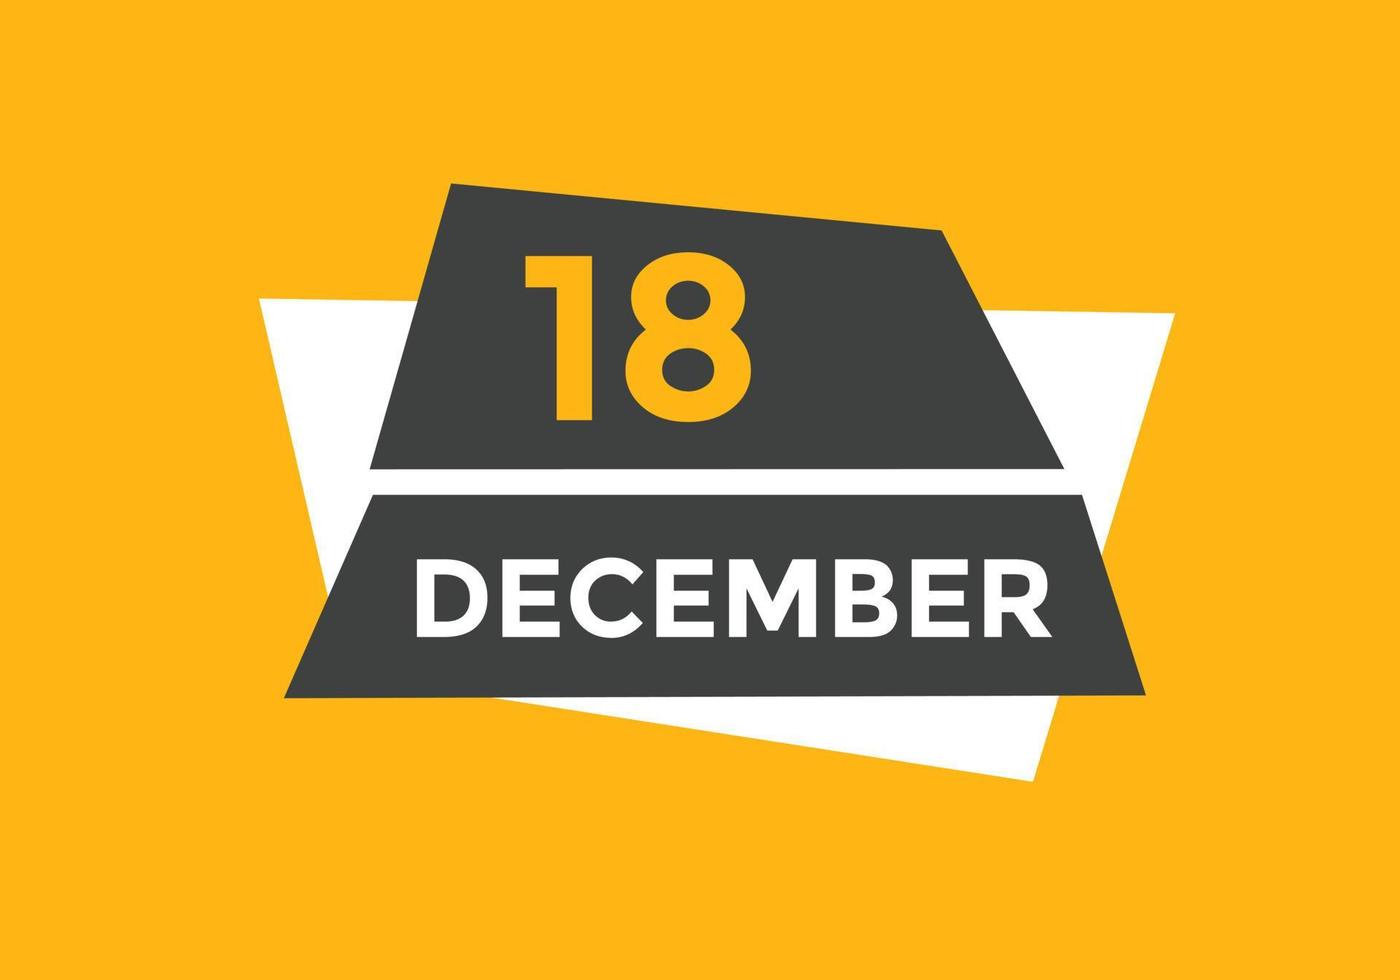 december 18 kalender herinnering. 18e december dagelijks kalender icoon sjabloon. kalender 18e december icoon ontwerp sjabloon. vector illustratie